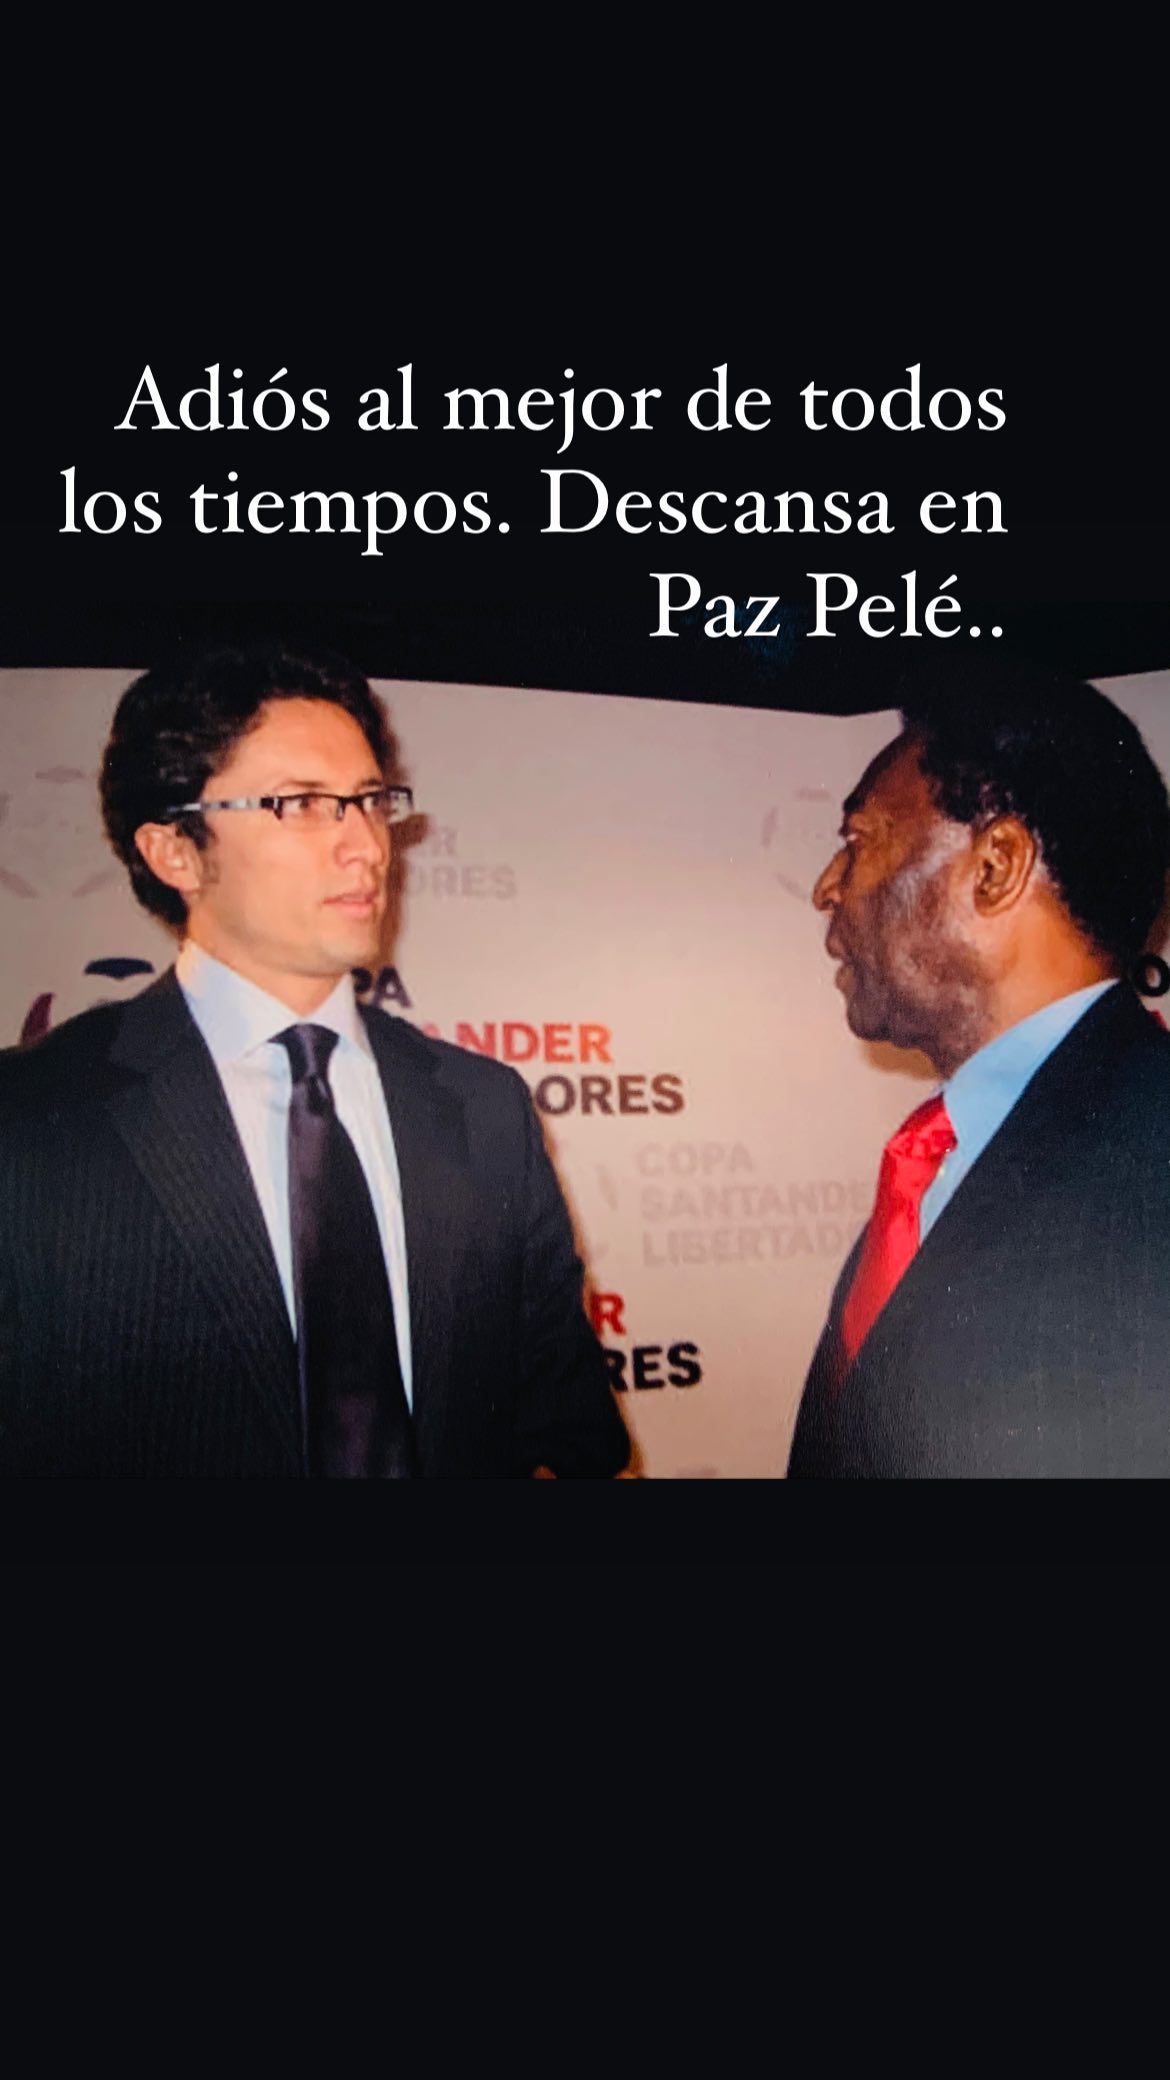 Francisco Sagredo Pelé